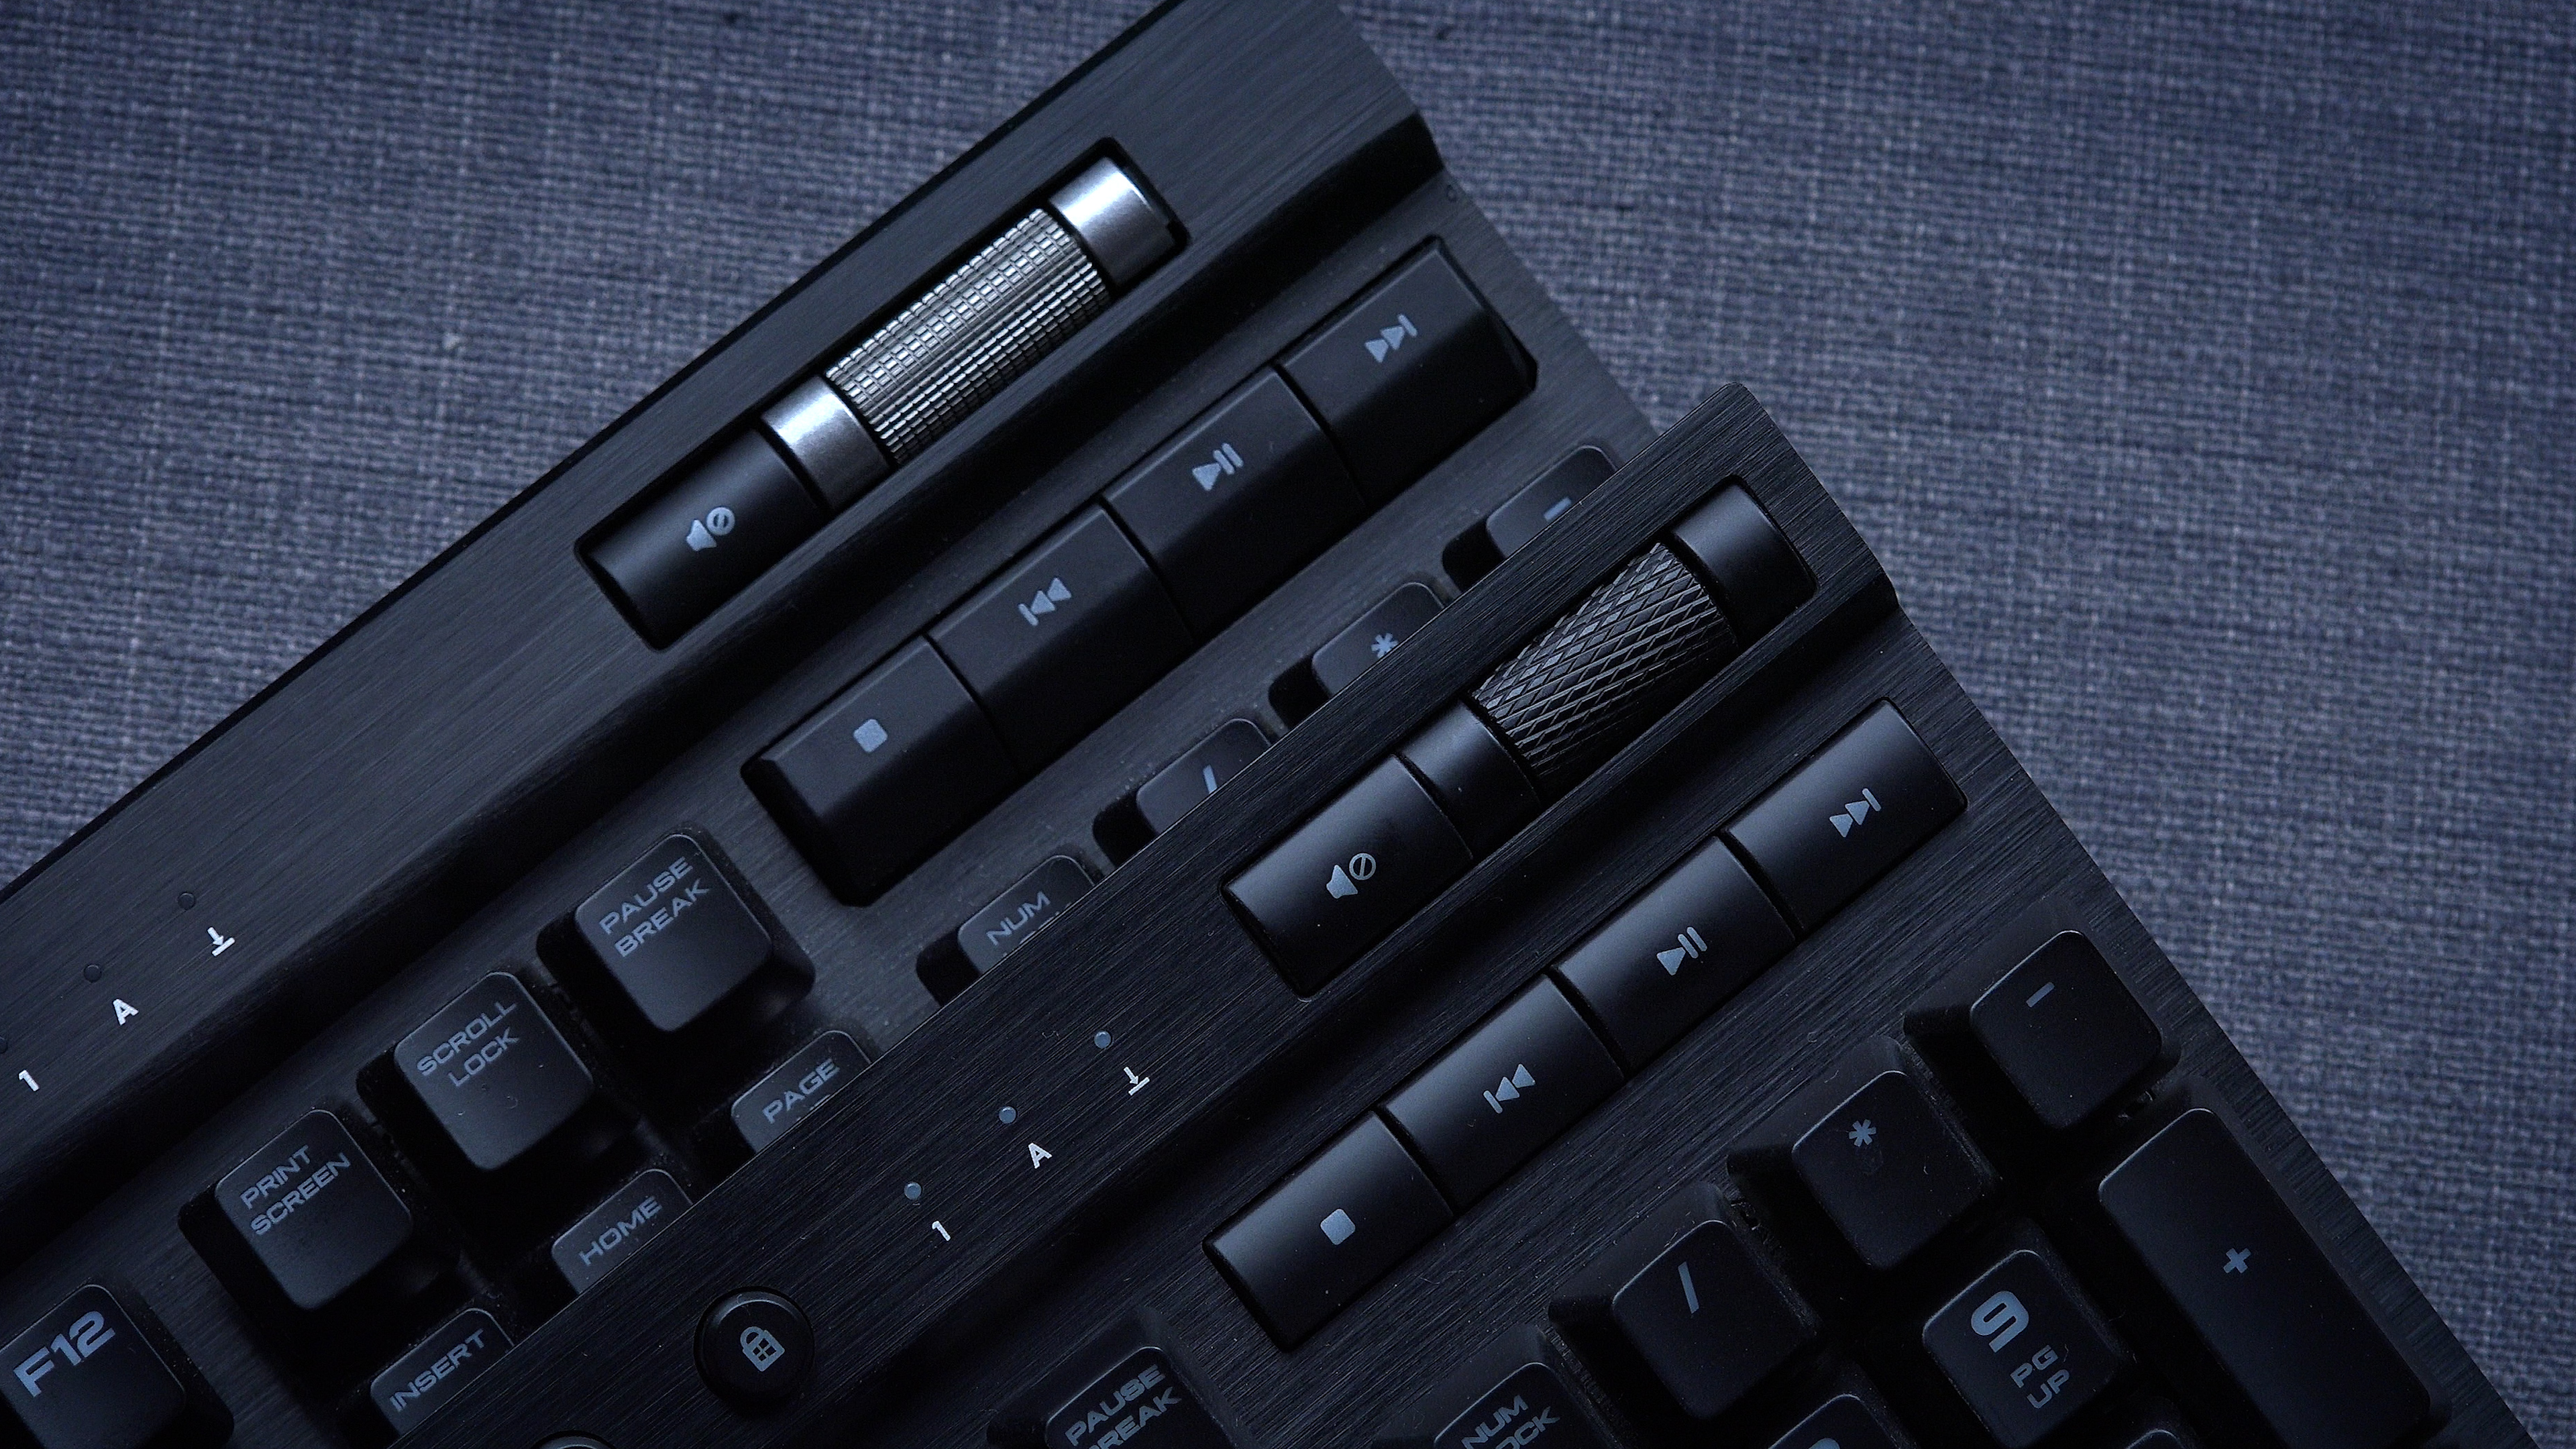 Bu klavye en kalitelilerinden biri! 'Corsair K70 MK.2 incelemesi'